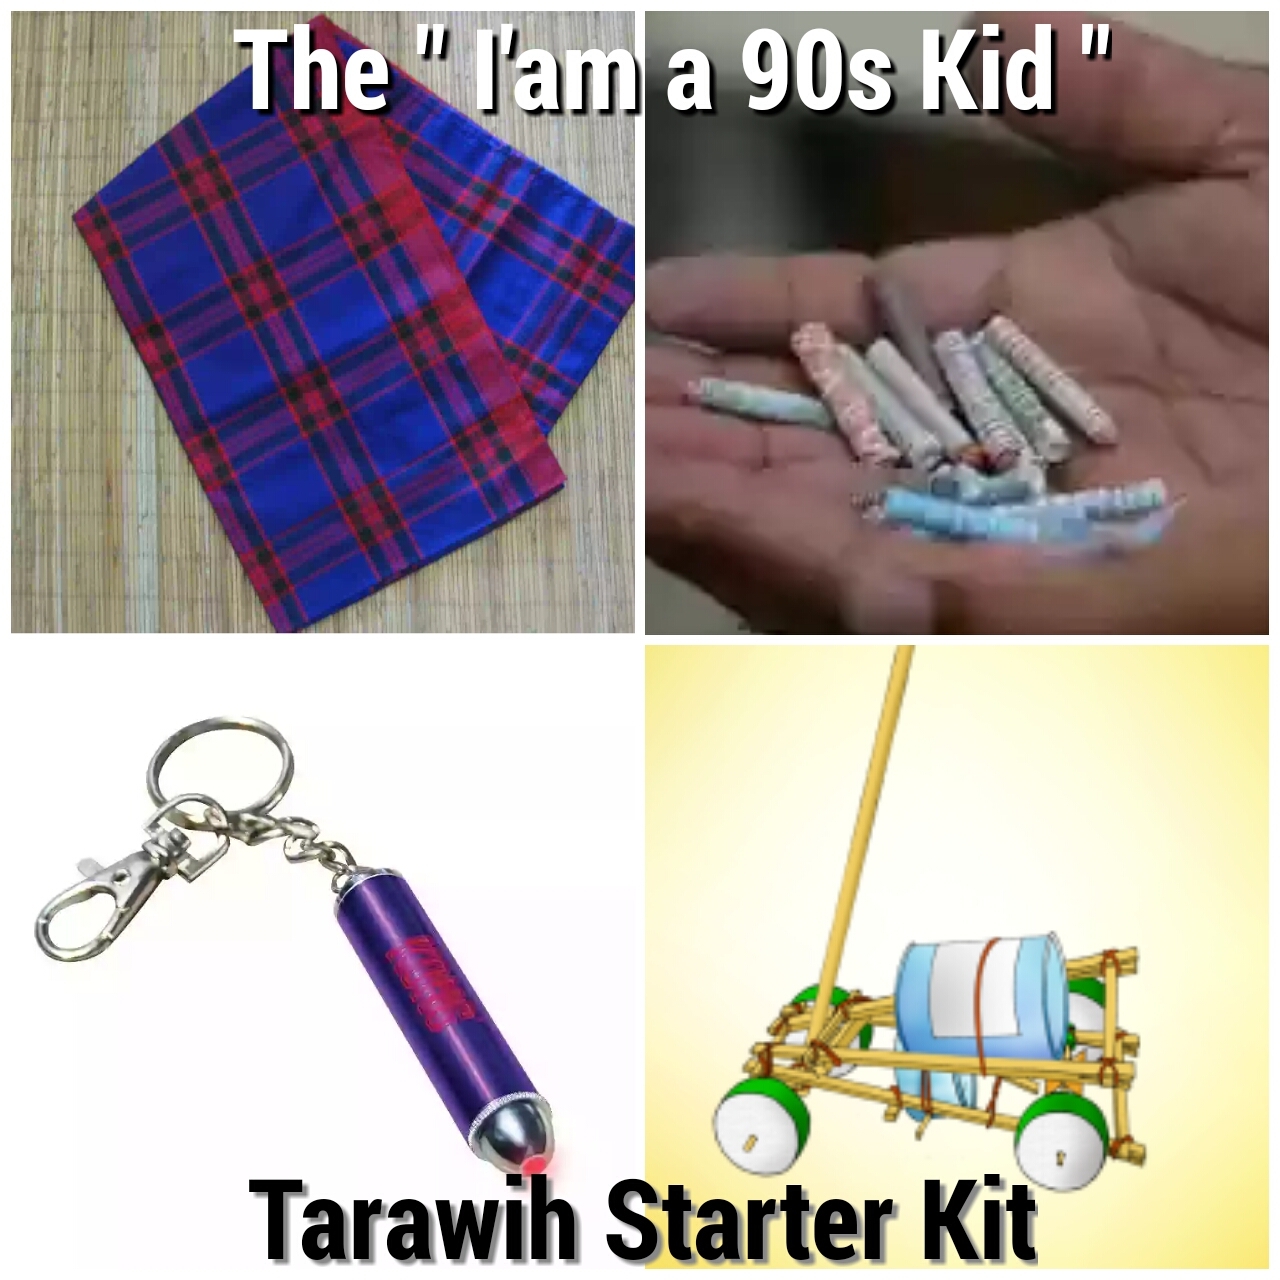 Tarawih Starter Kit Anak 90an KASKUS